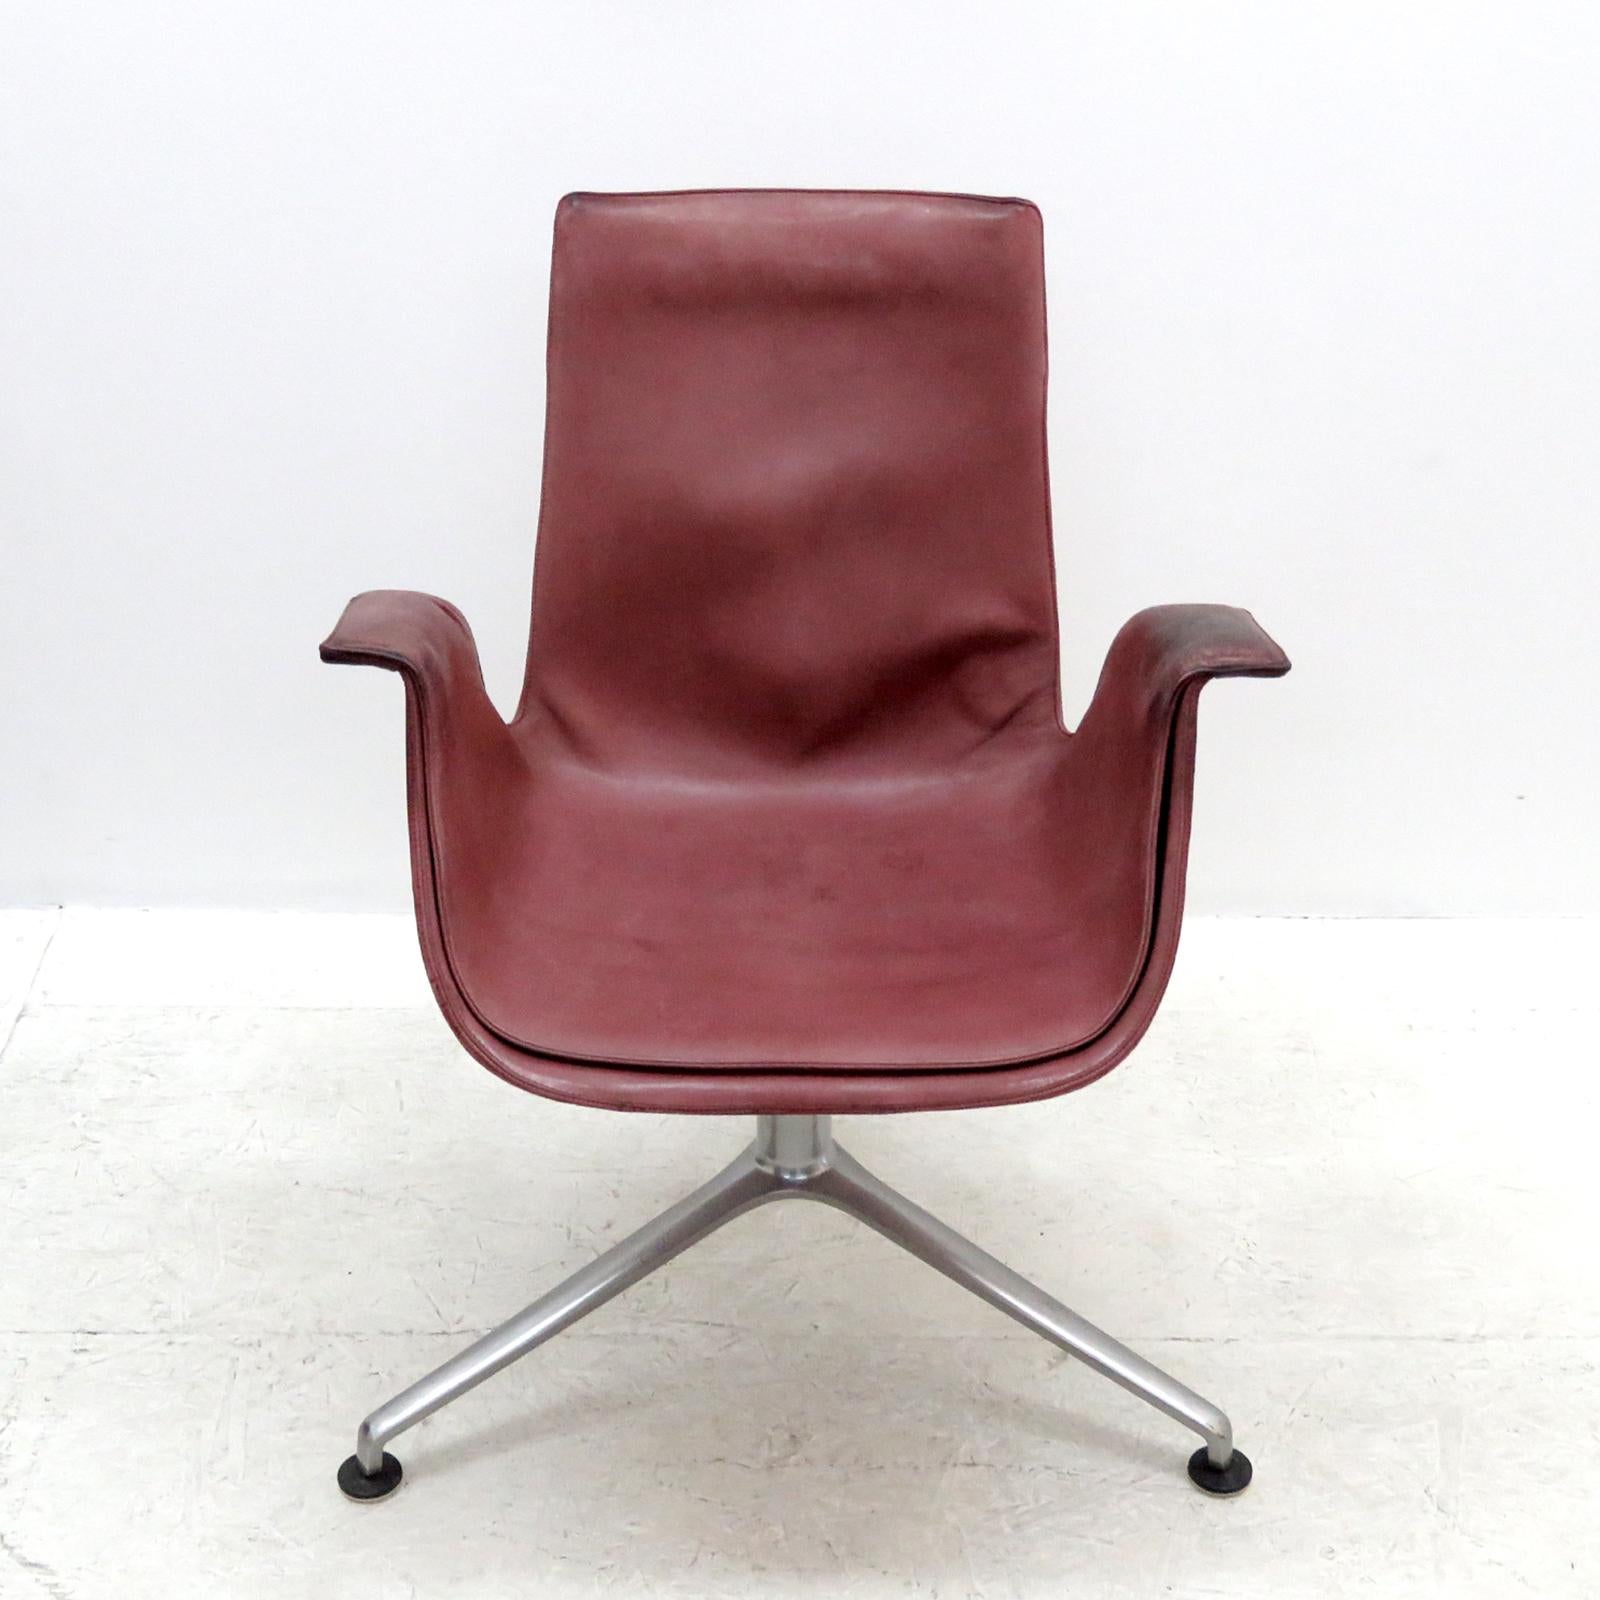 Scandinavian Modern Preben Fabricius 'FK 6727' Chair, 1964